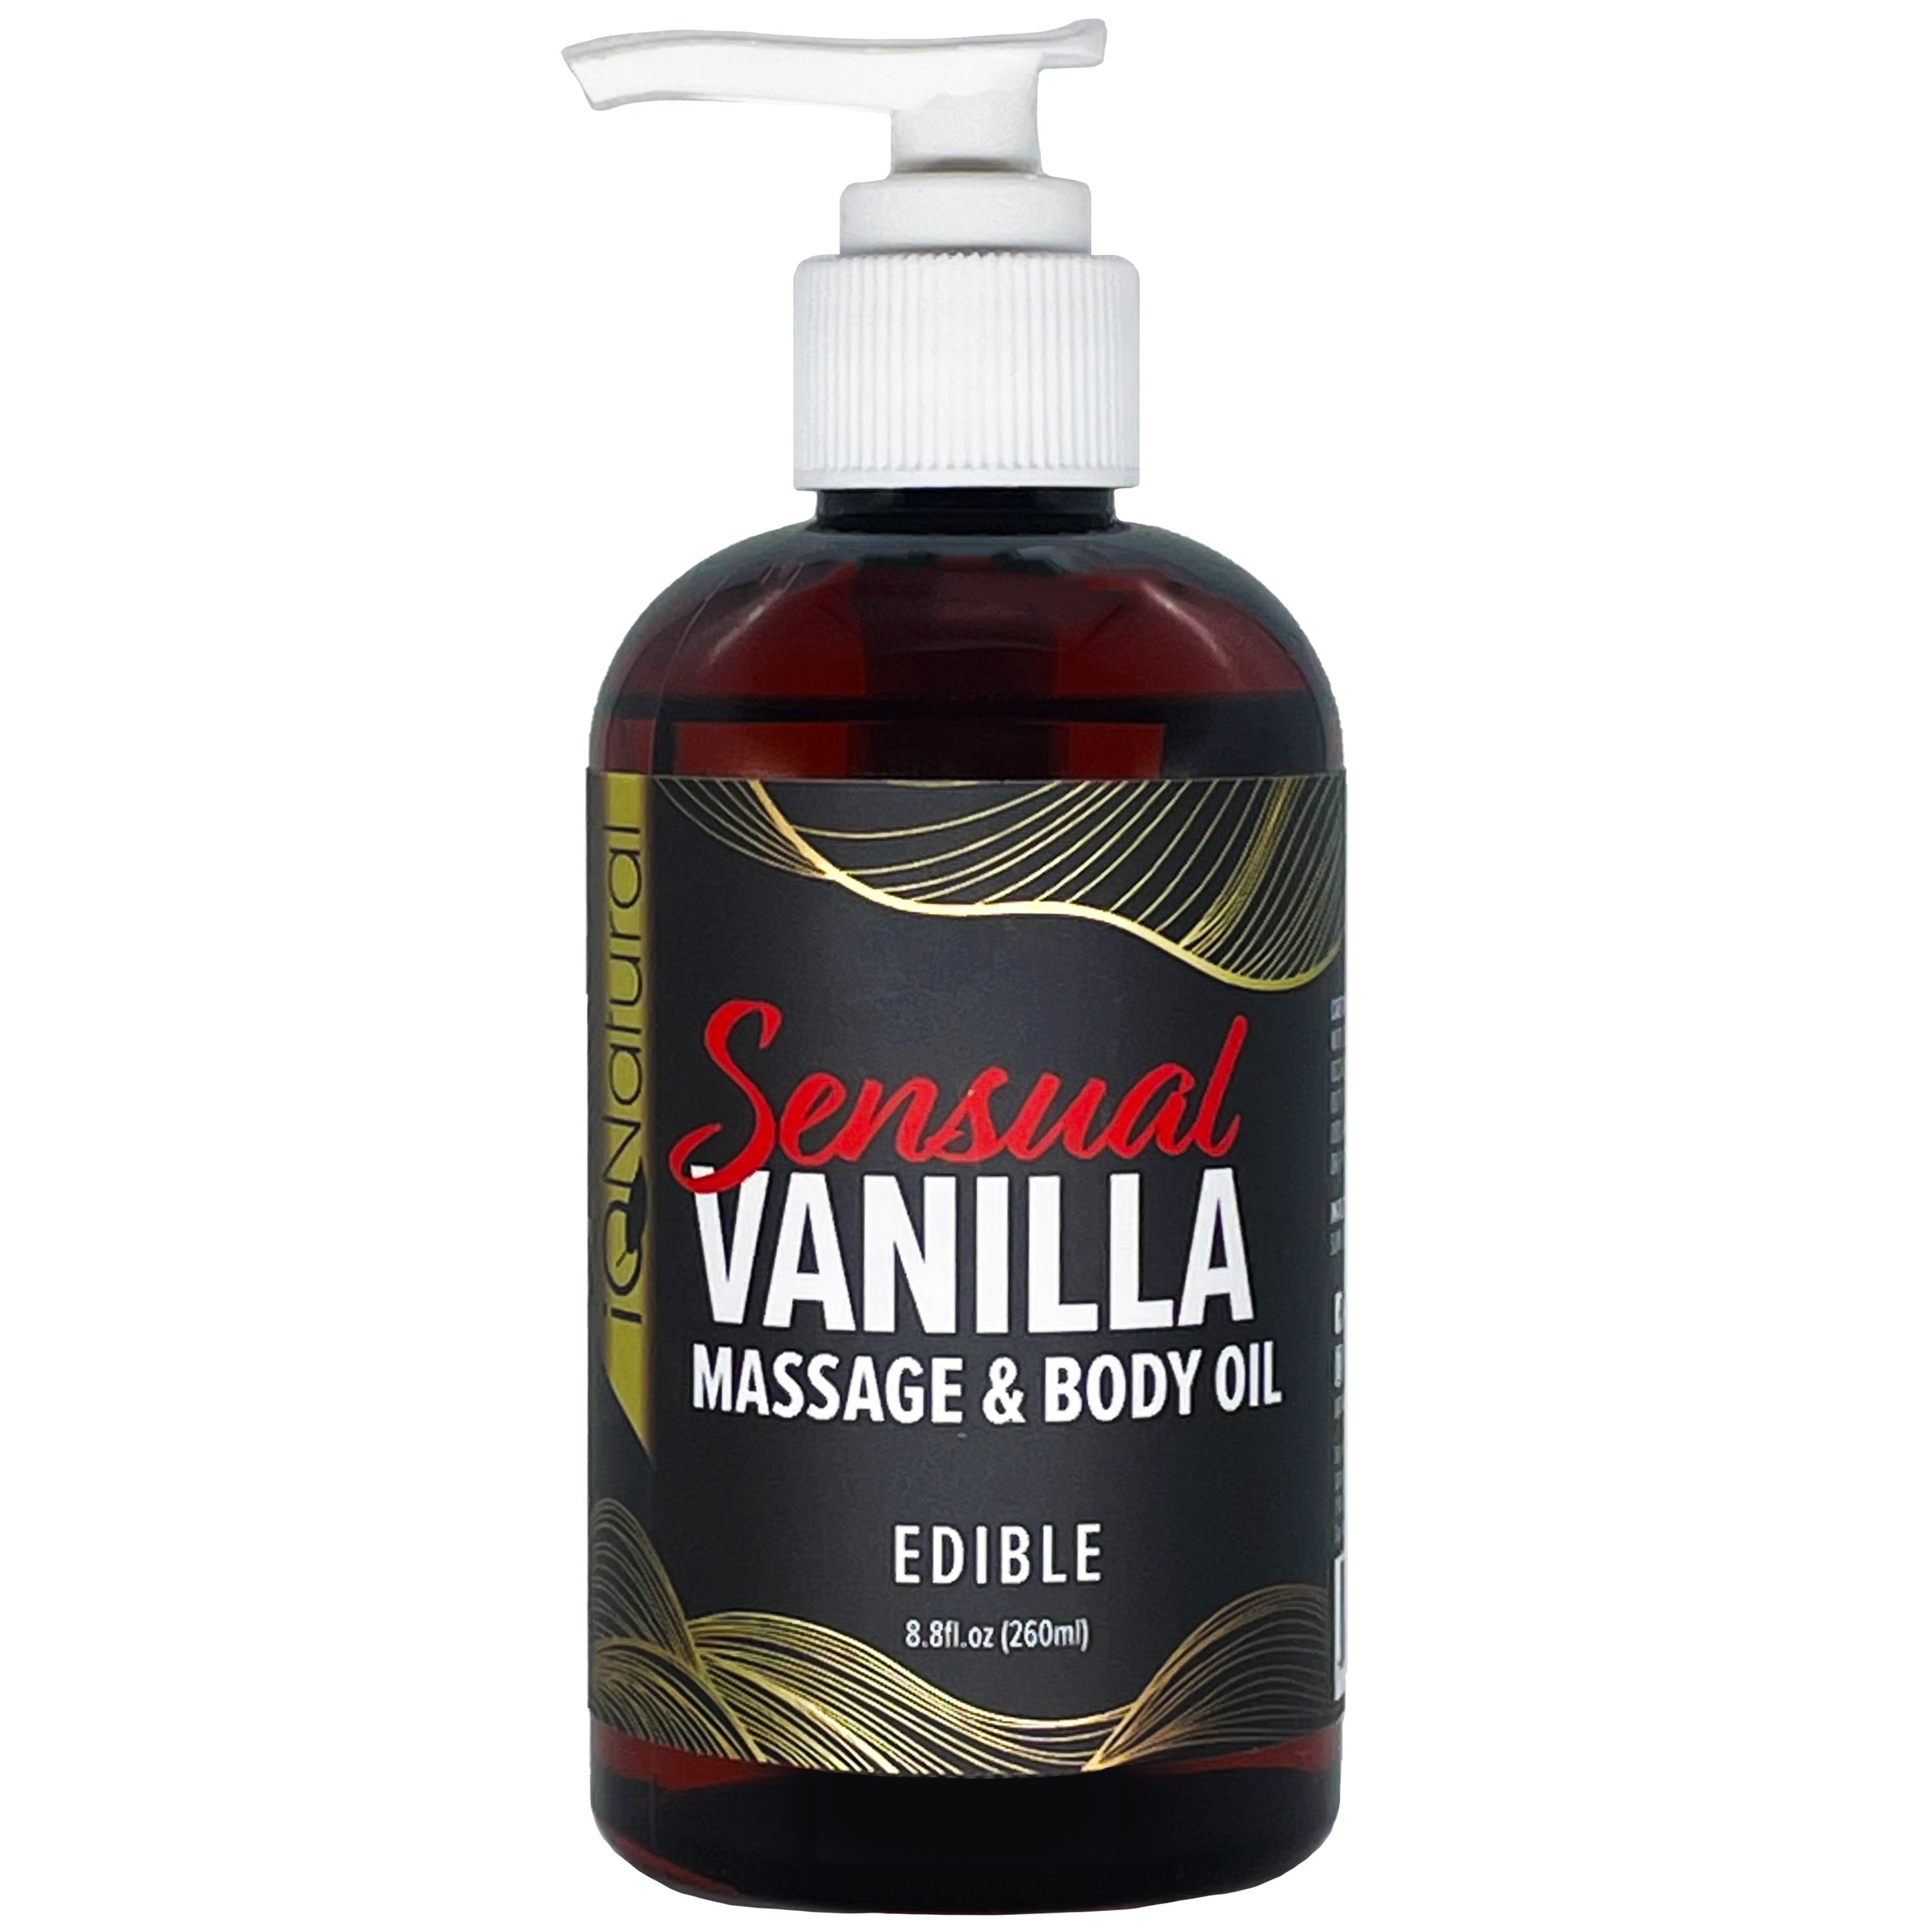 iQ Natural Massage Oil and Body Oil Sensual Vanilla Edible for Intimate Massage Therapy 8.8 fl oz picture